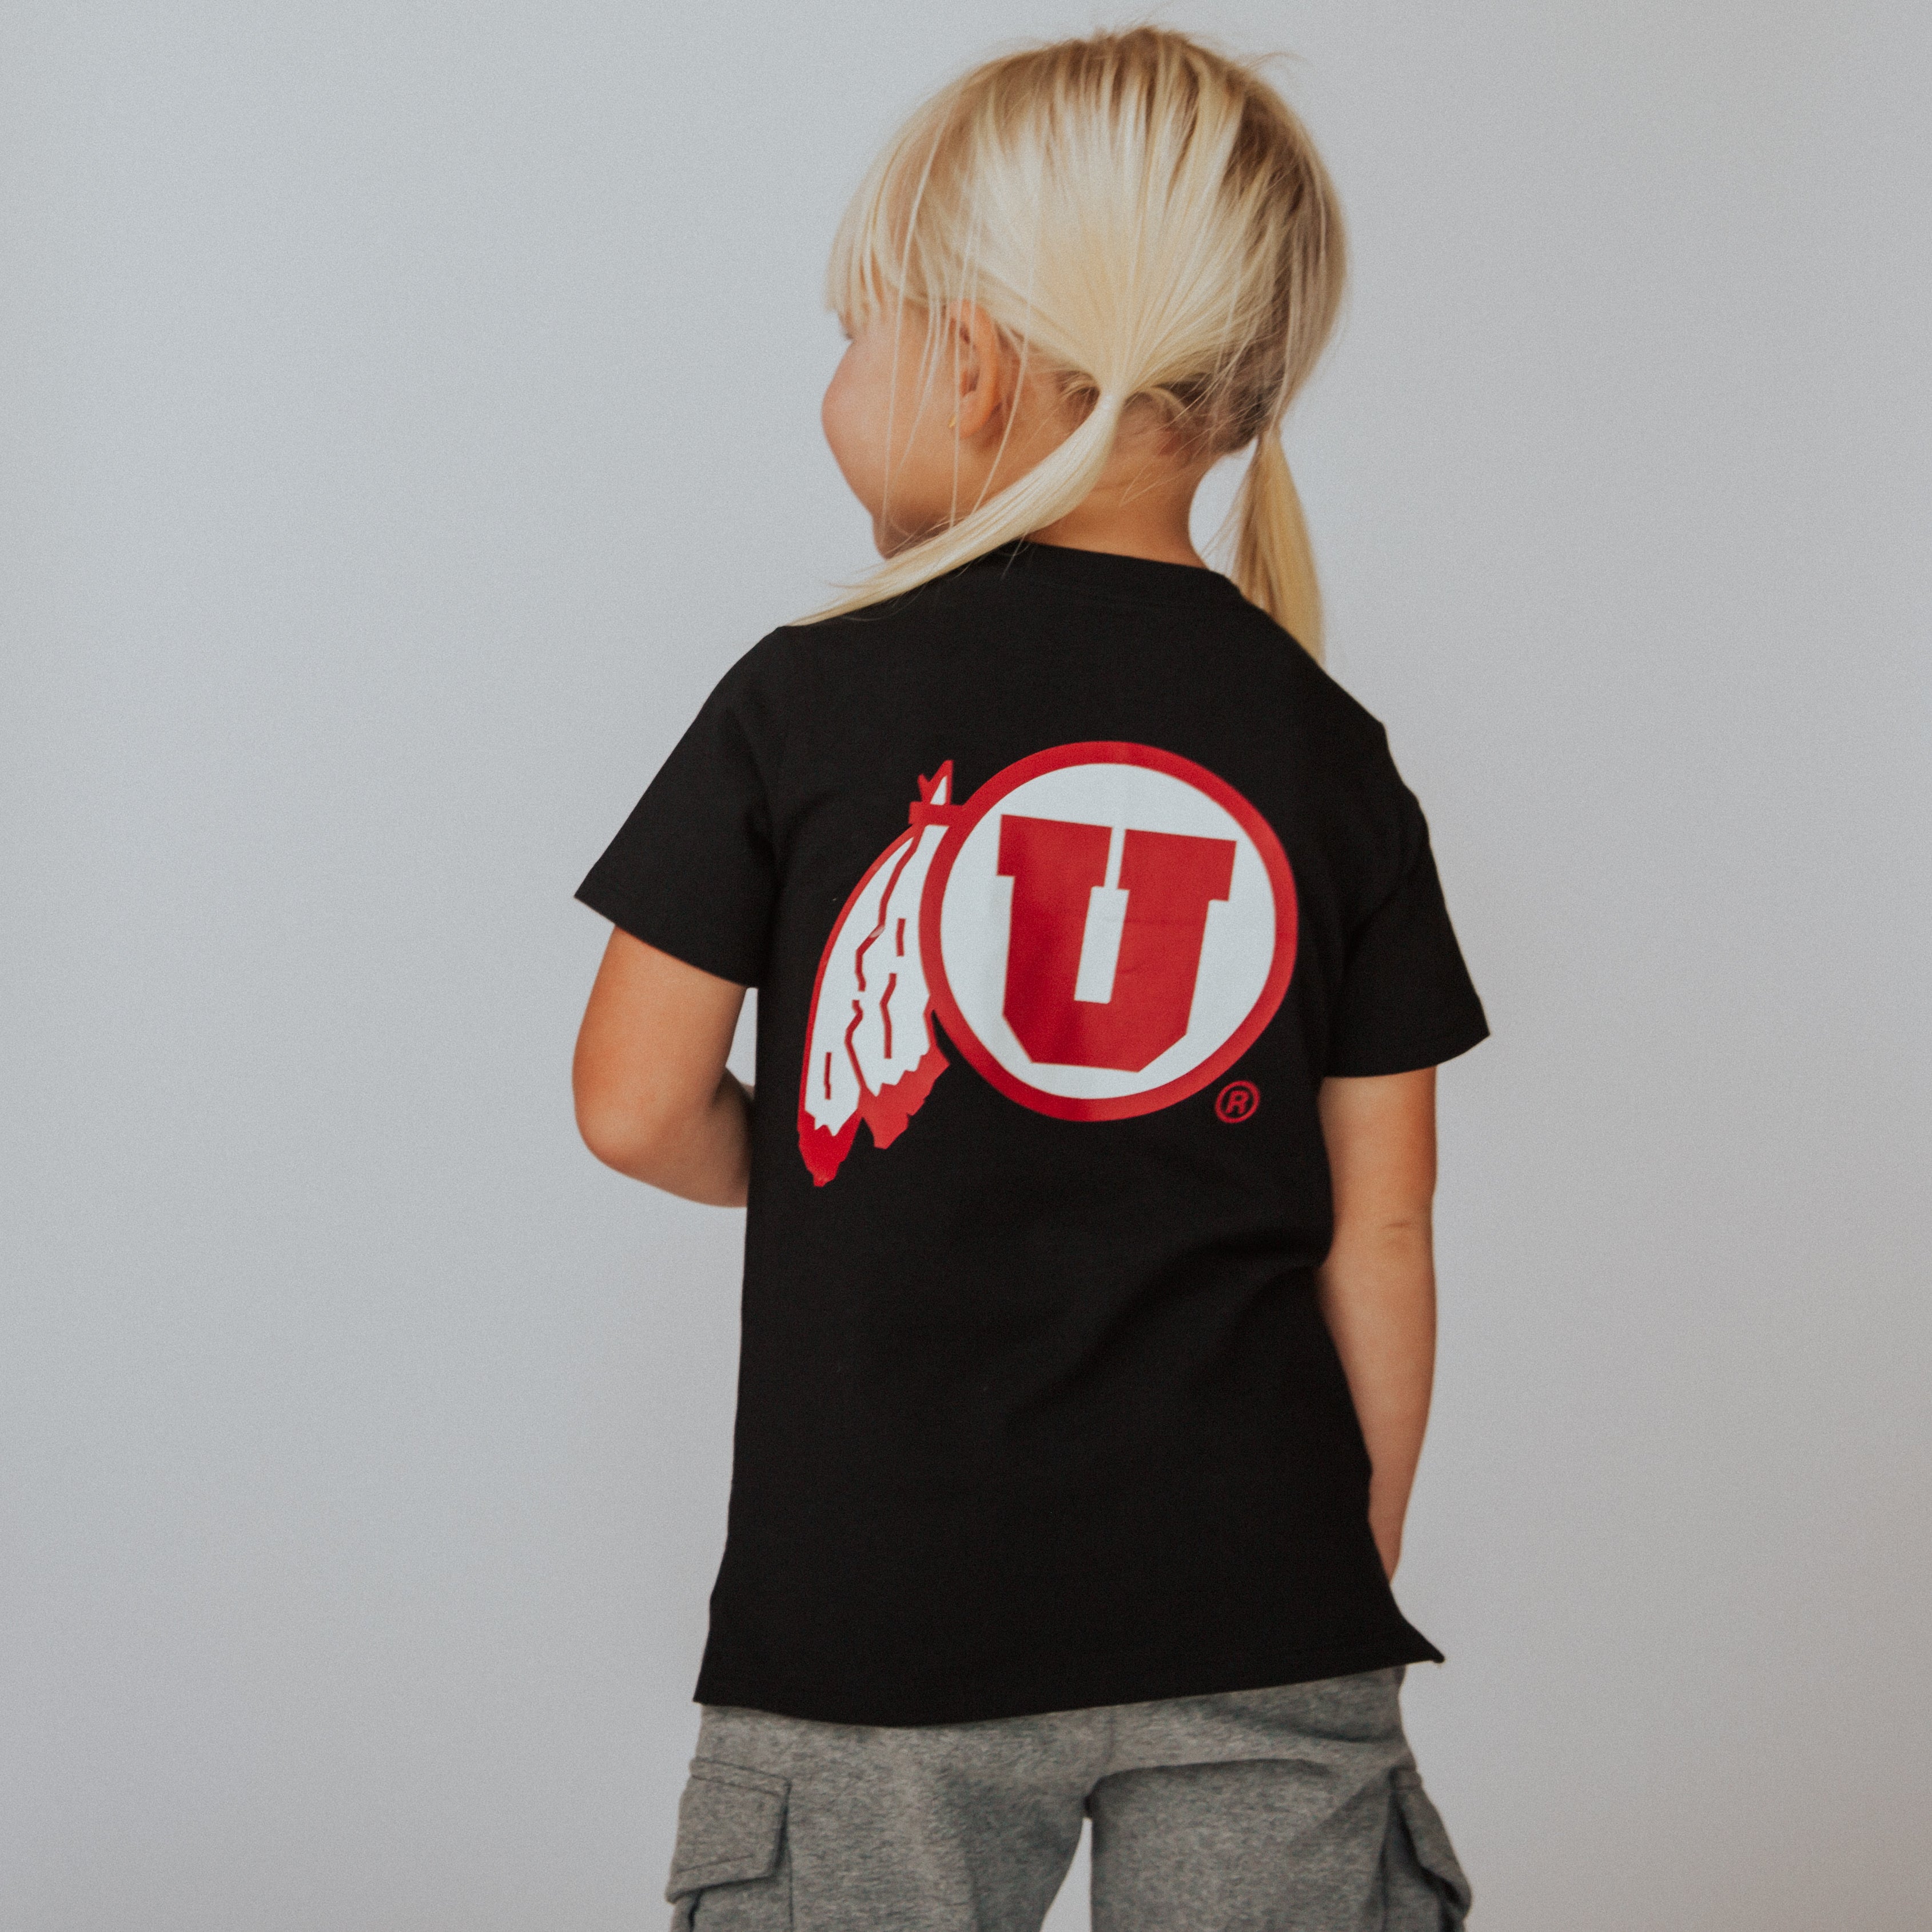 Short Sleeve Kids Tee - 'University of Utah'